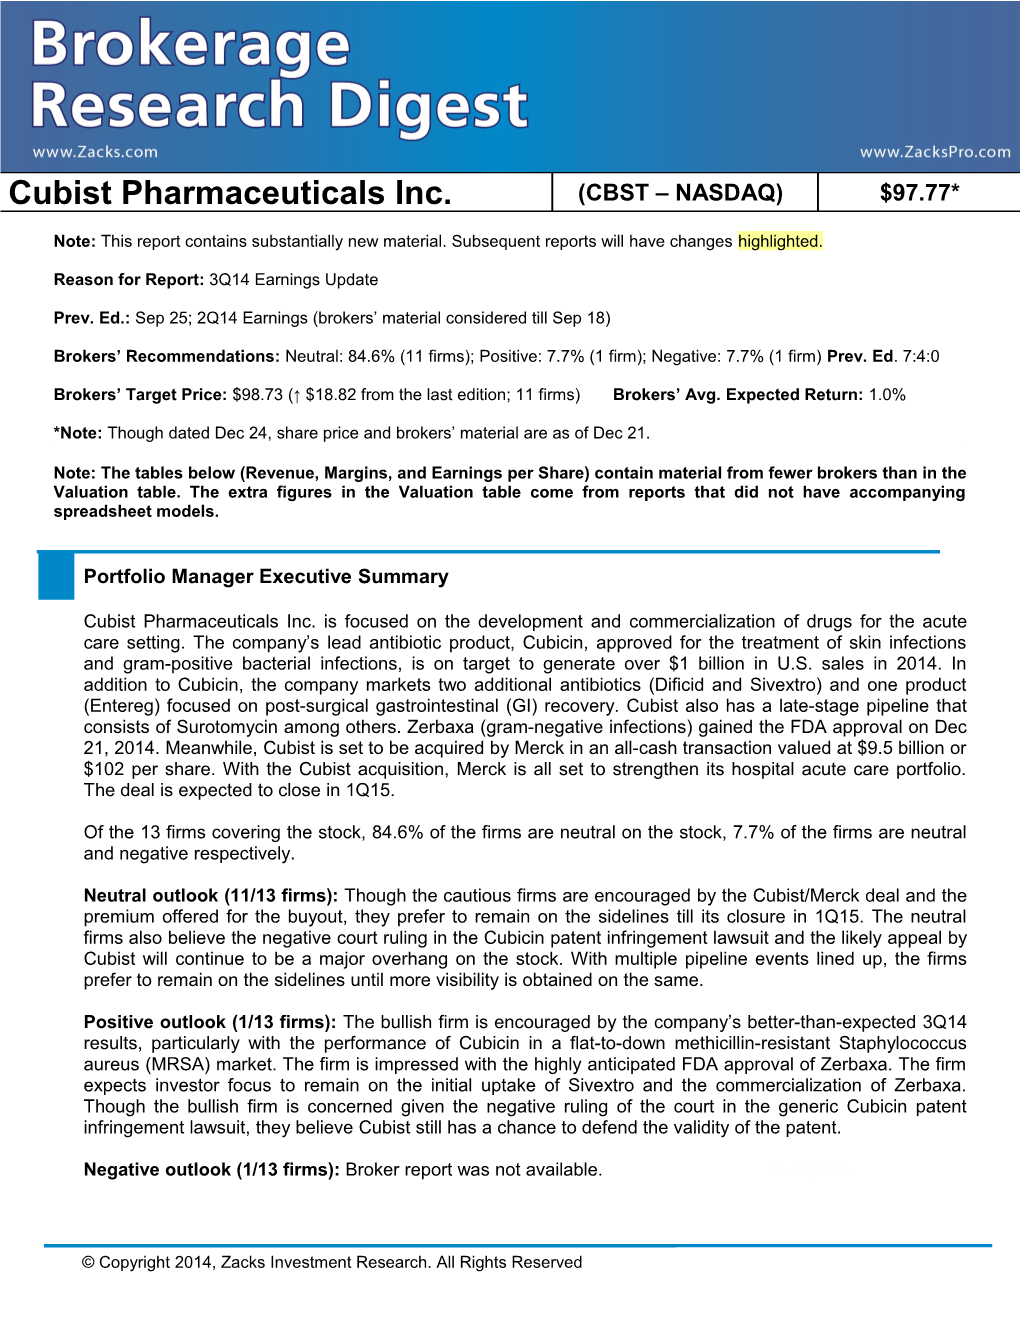 Cubist Pharmaceuticals Inc